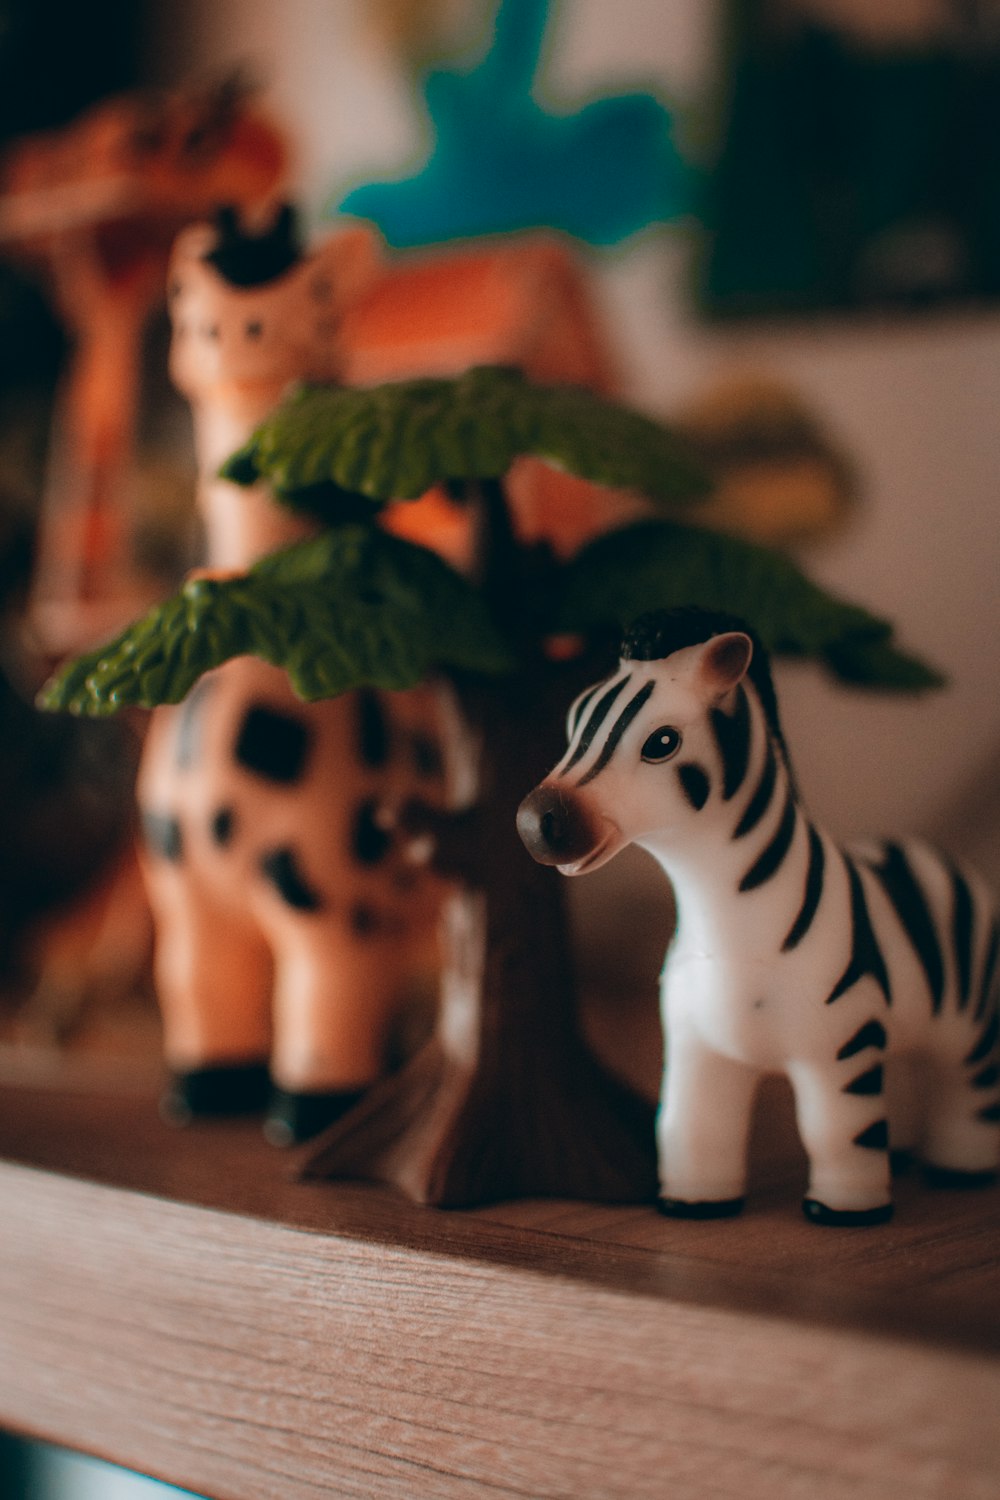 a close up of a toy zebra on a shelf